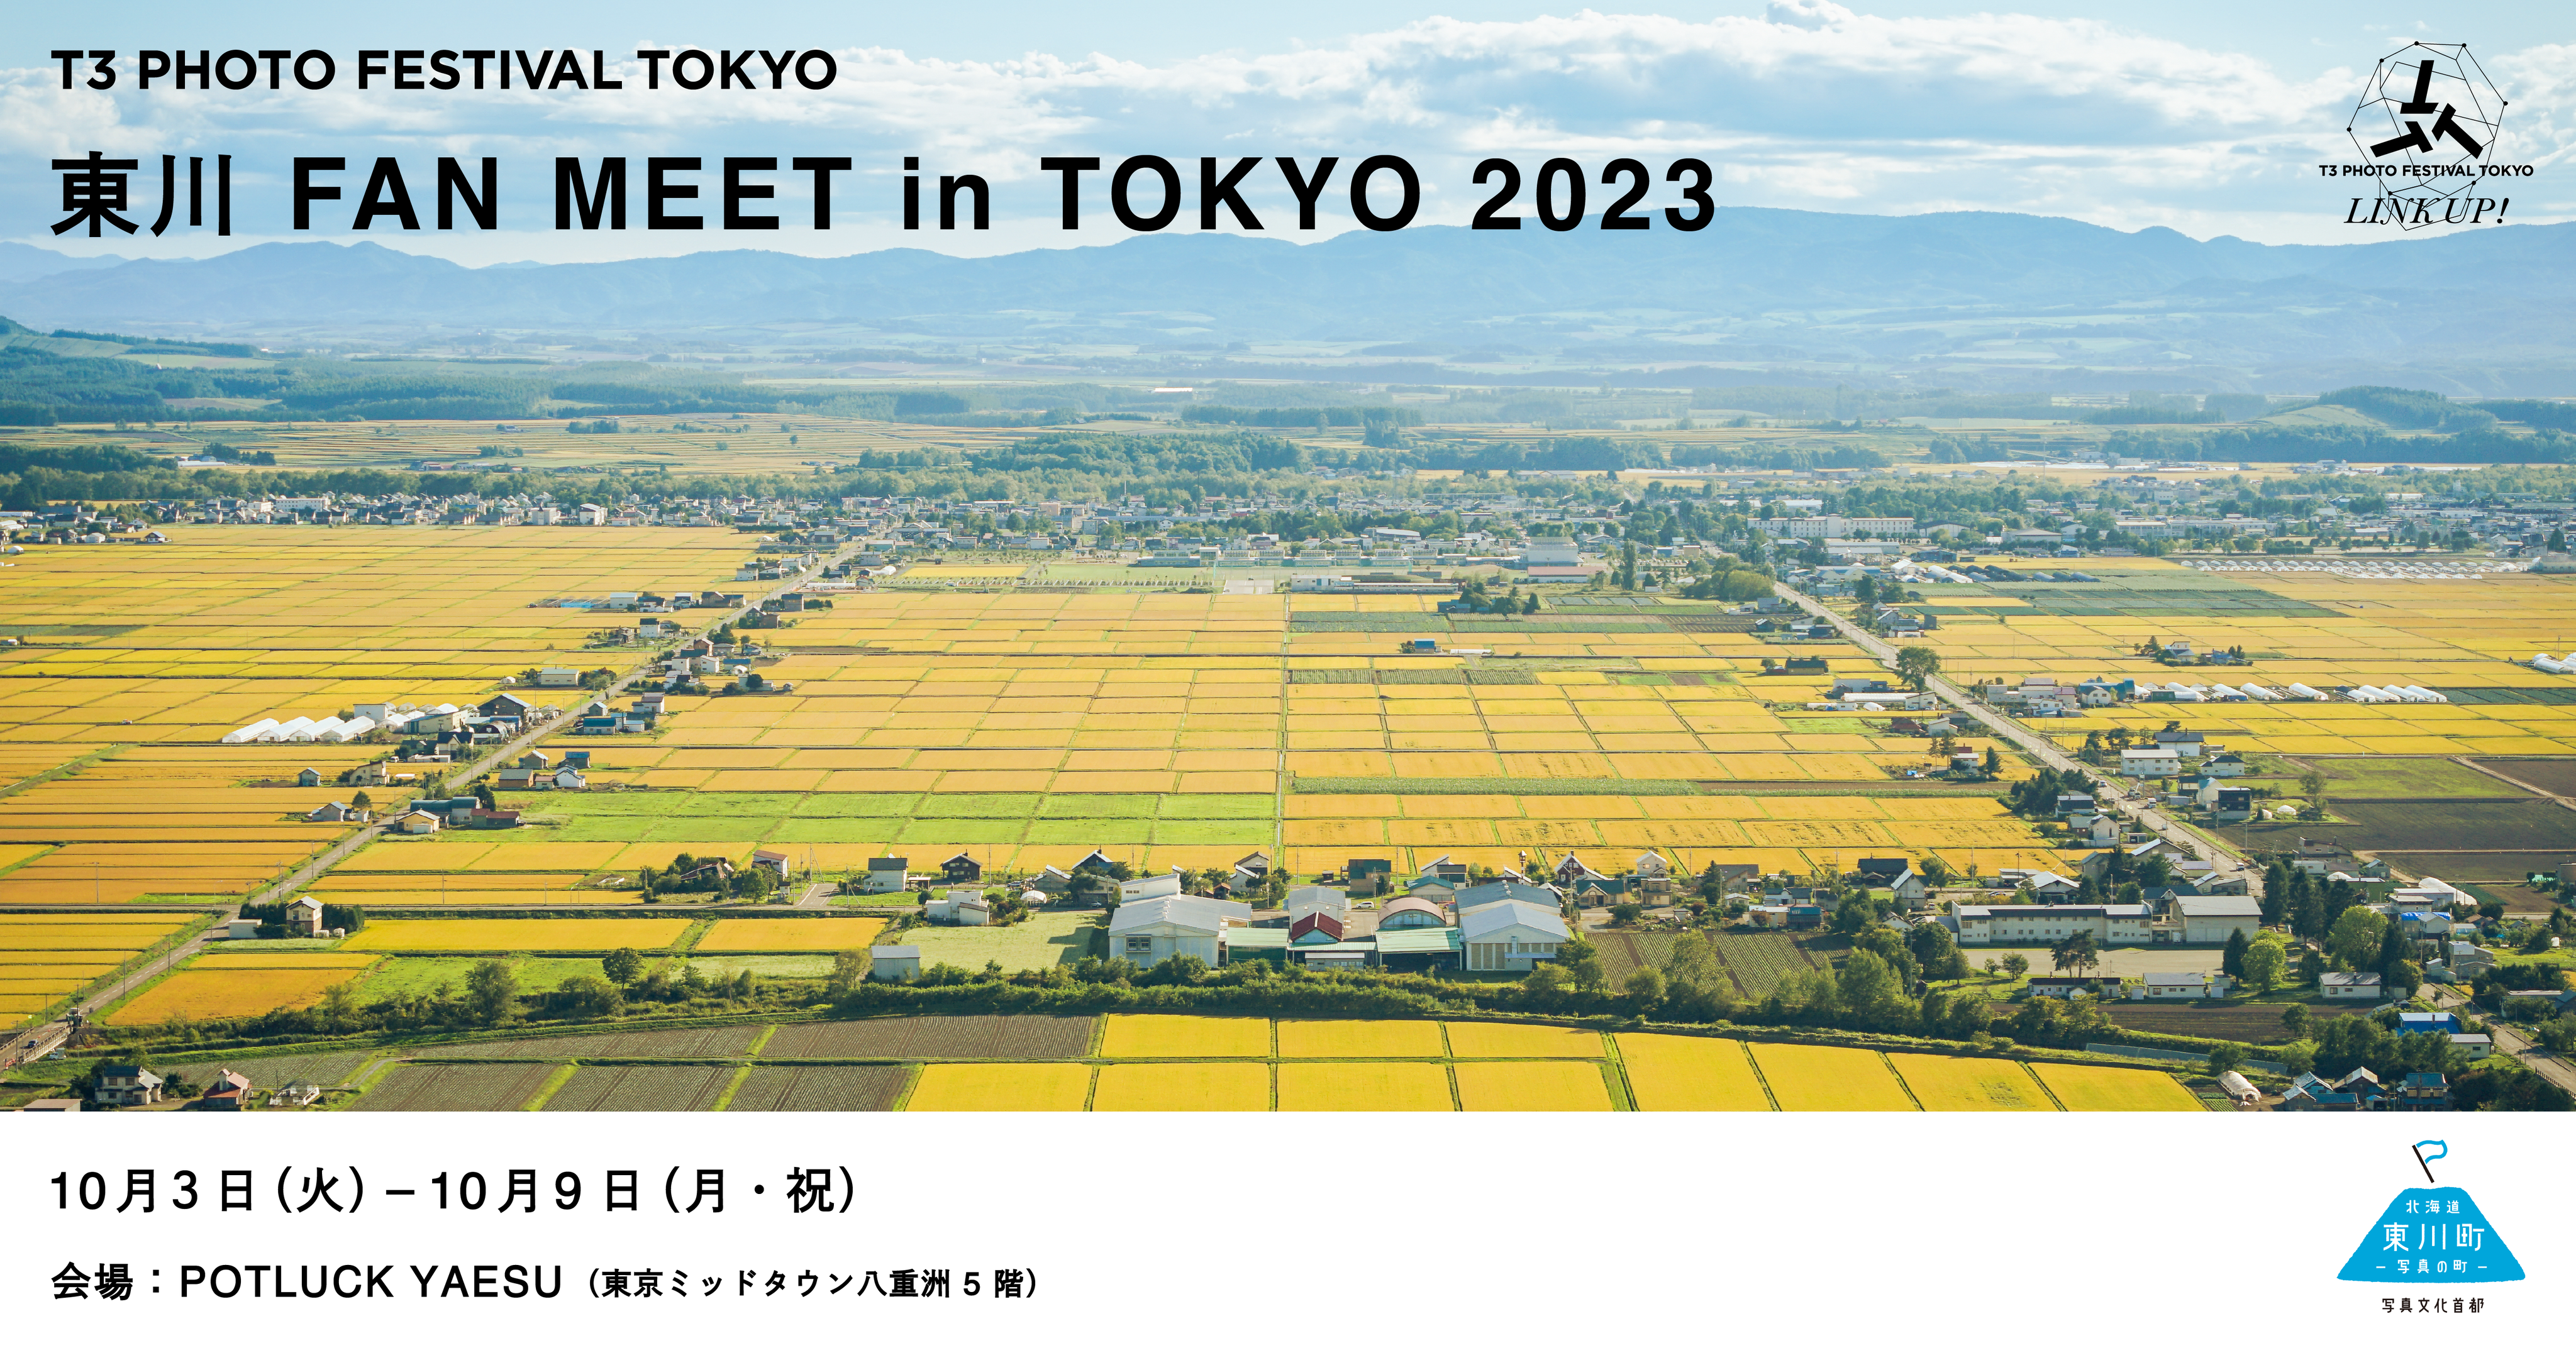 【北海道 東川町】「写真の町」が都内屋外型国際写真祭と連携！北海道東川町×T3 PHOTO FESTIVAL TOKYO共催『東川 FAN MEET in TOKYO 2023』開催